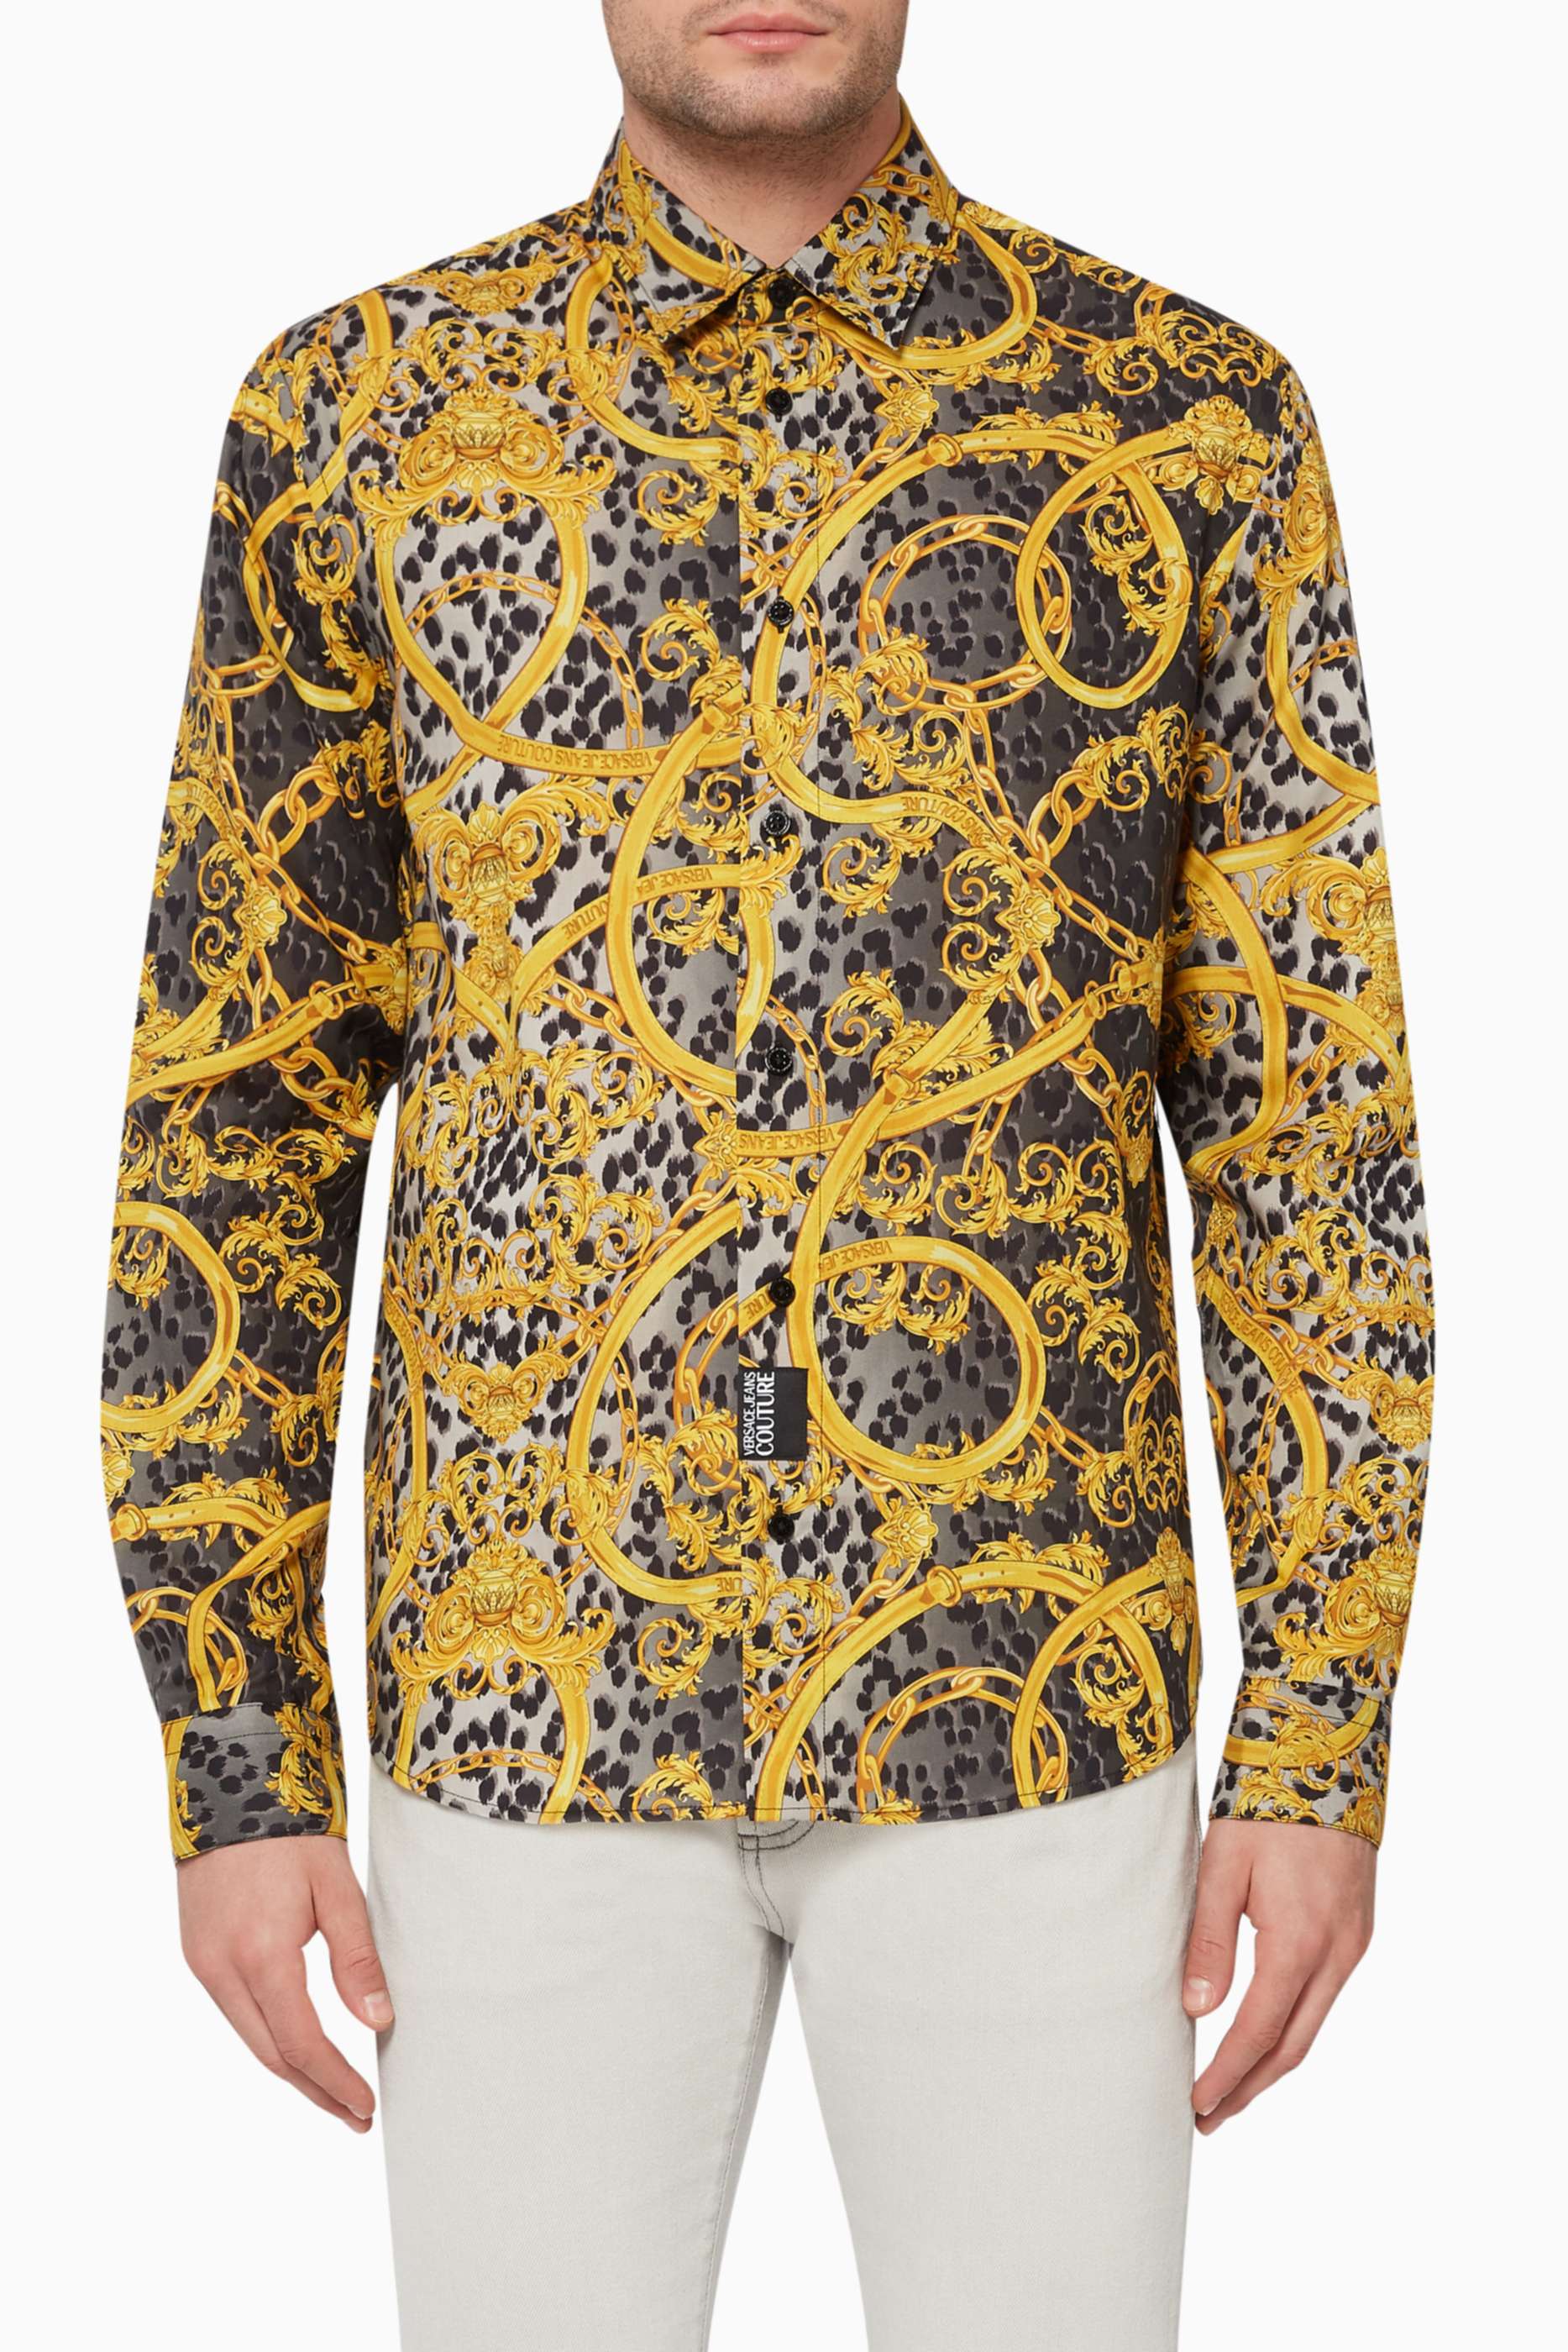 versace mens leopard shirt